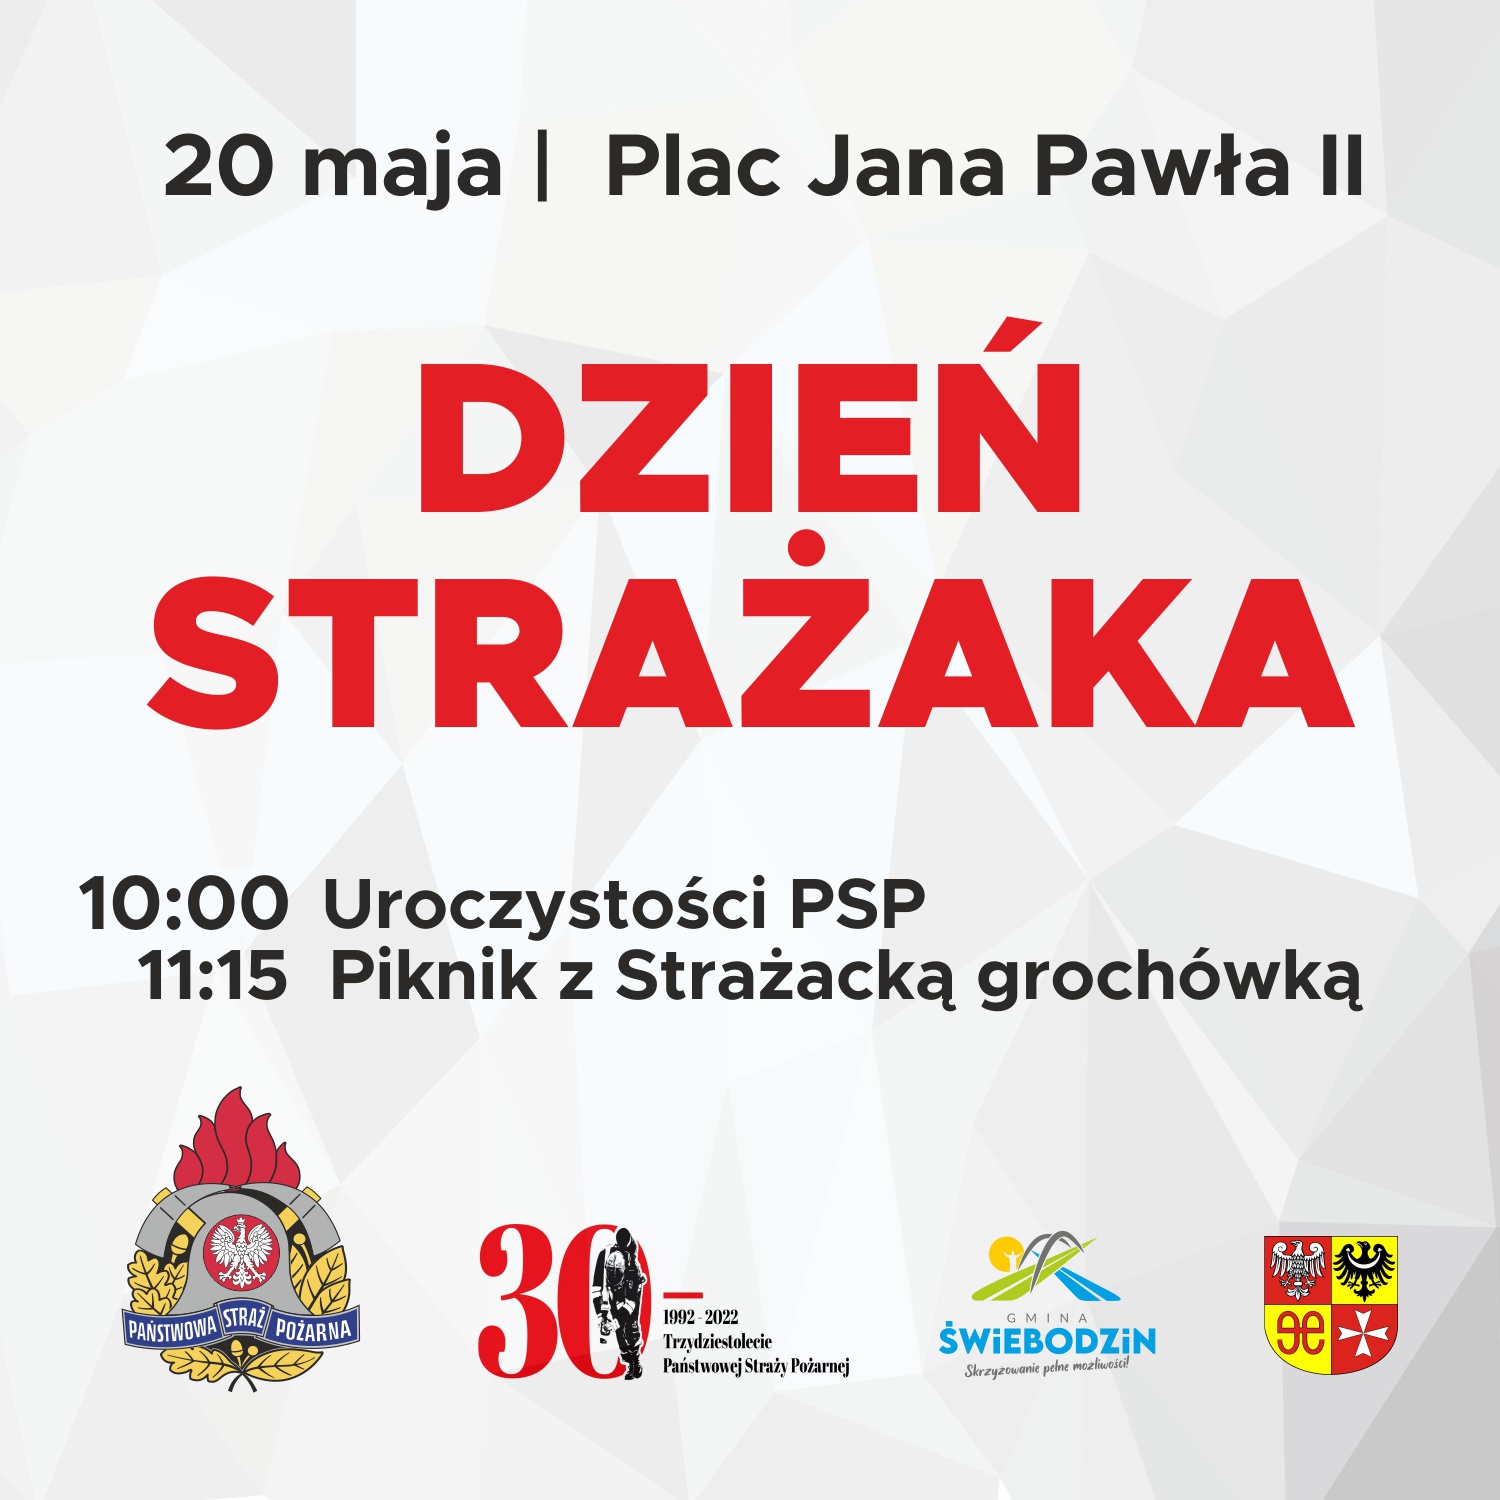 Powiatowe Obchody Dnia Strażaka 2022